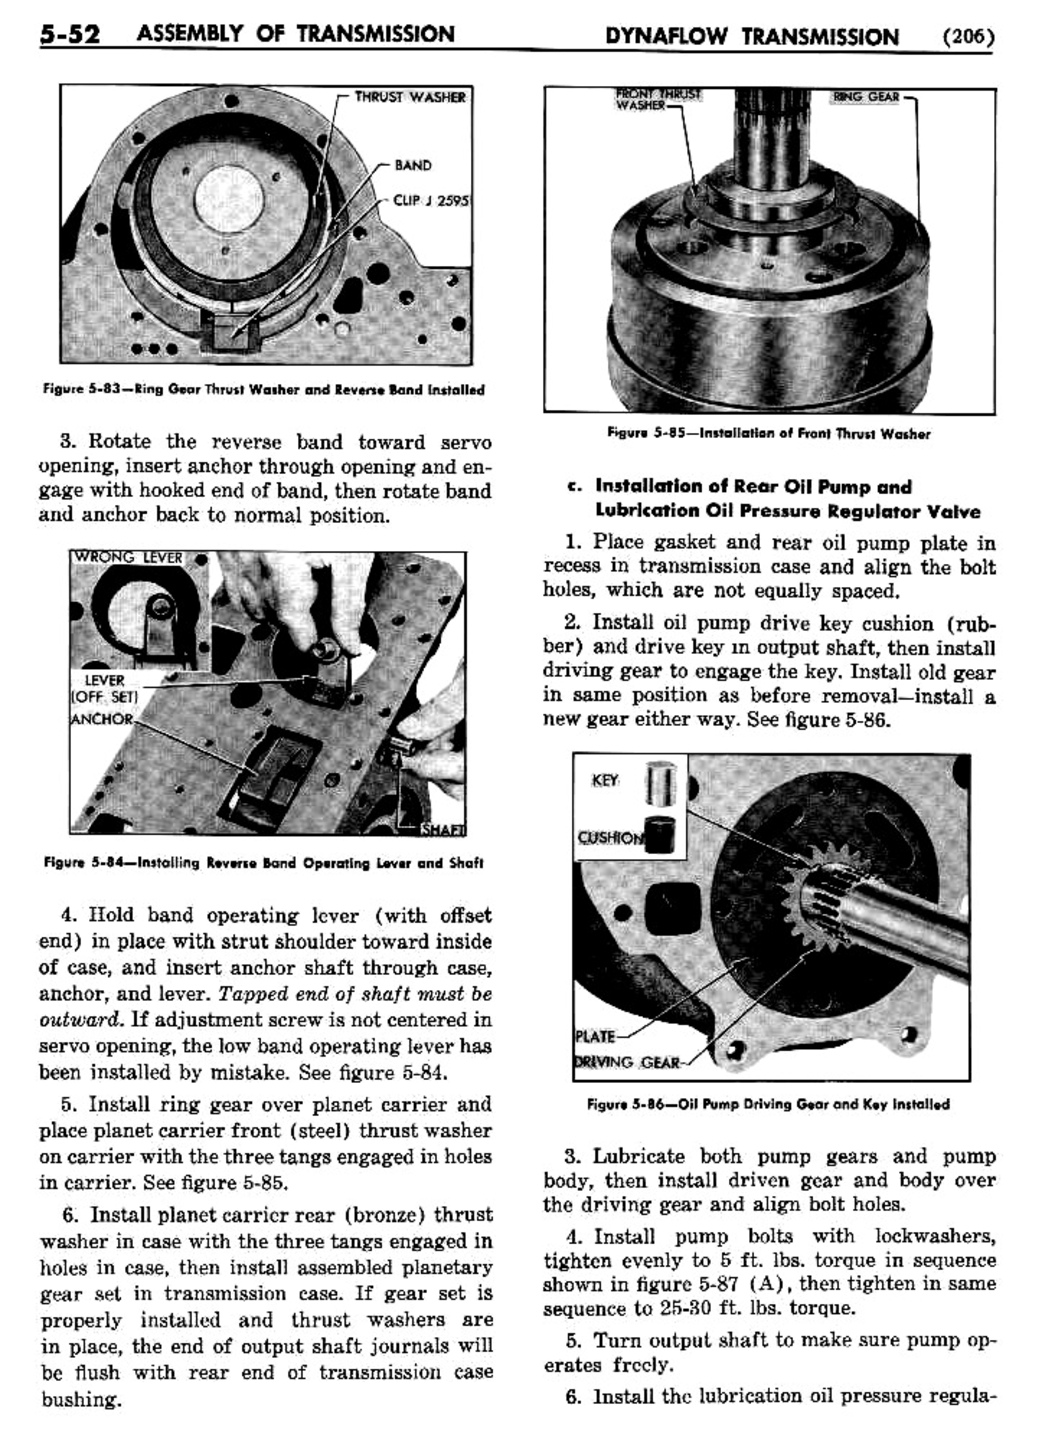 n_06 1954 Buick Shop Manual - Dynaflow-052-052.jpg